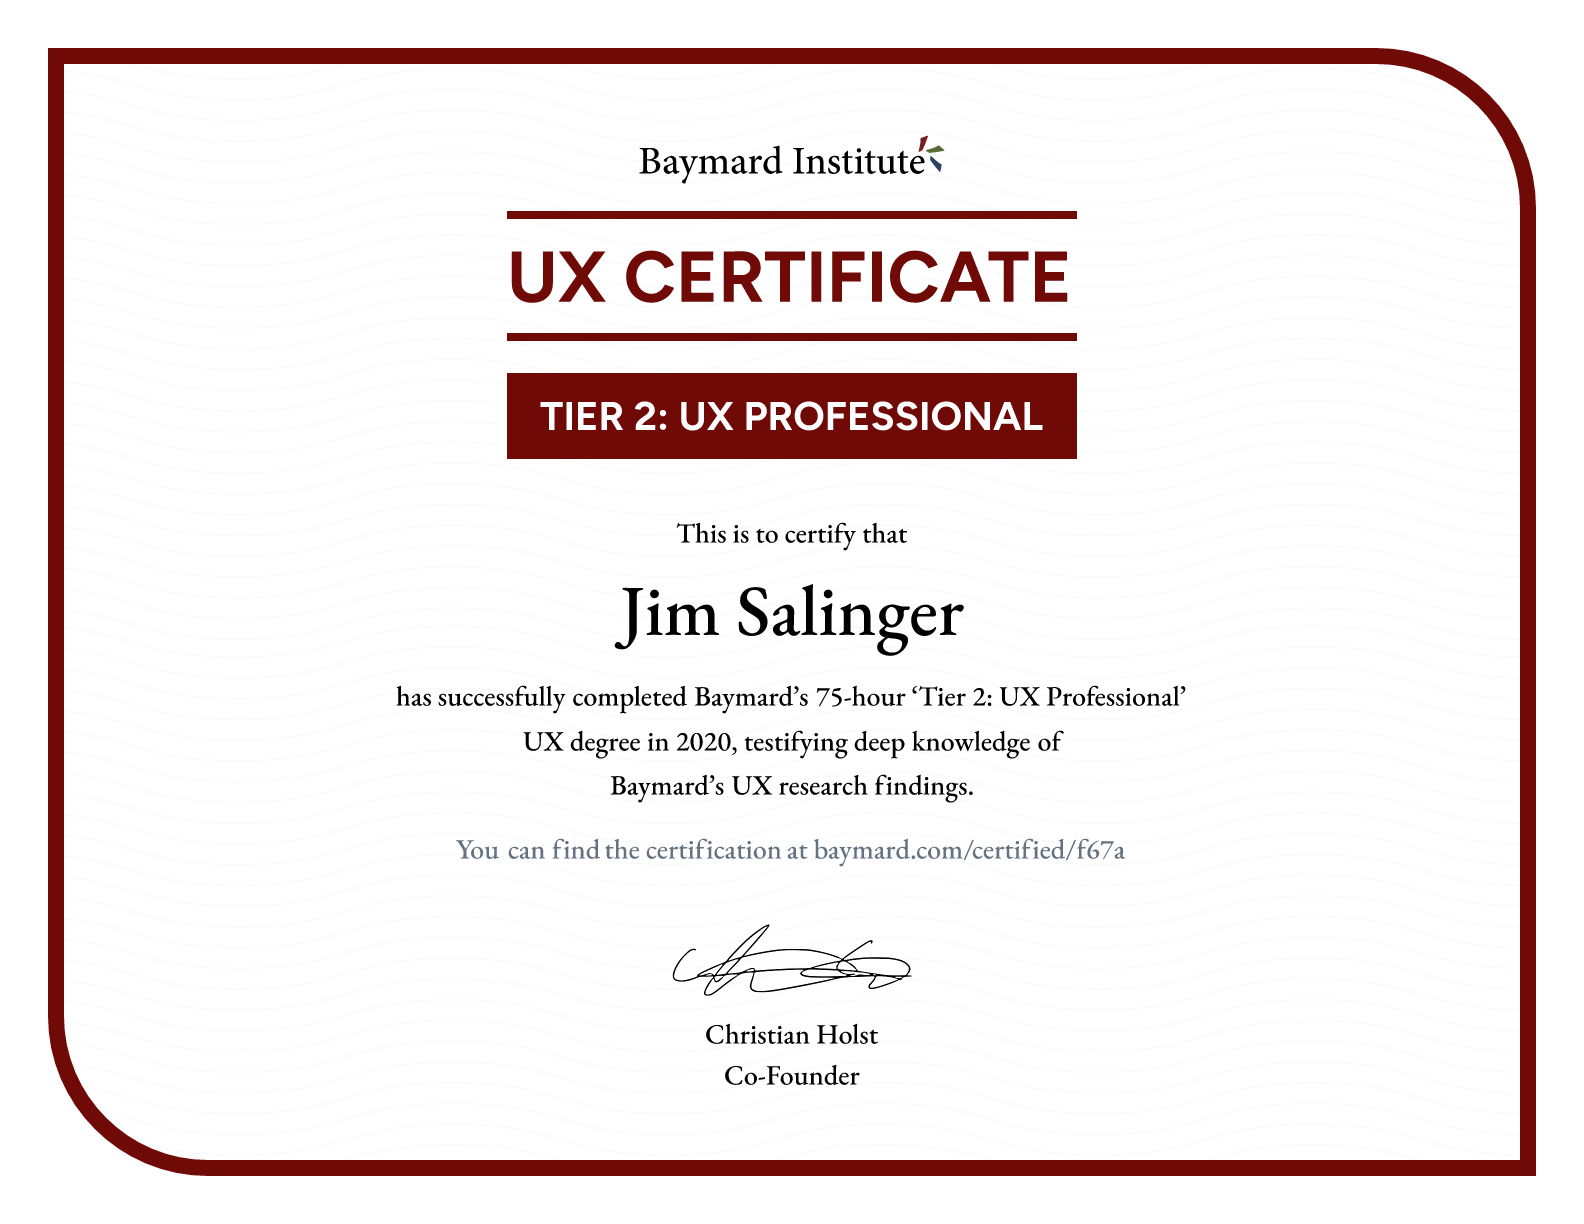 Jim Salinger’s certificate